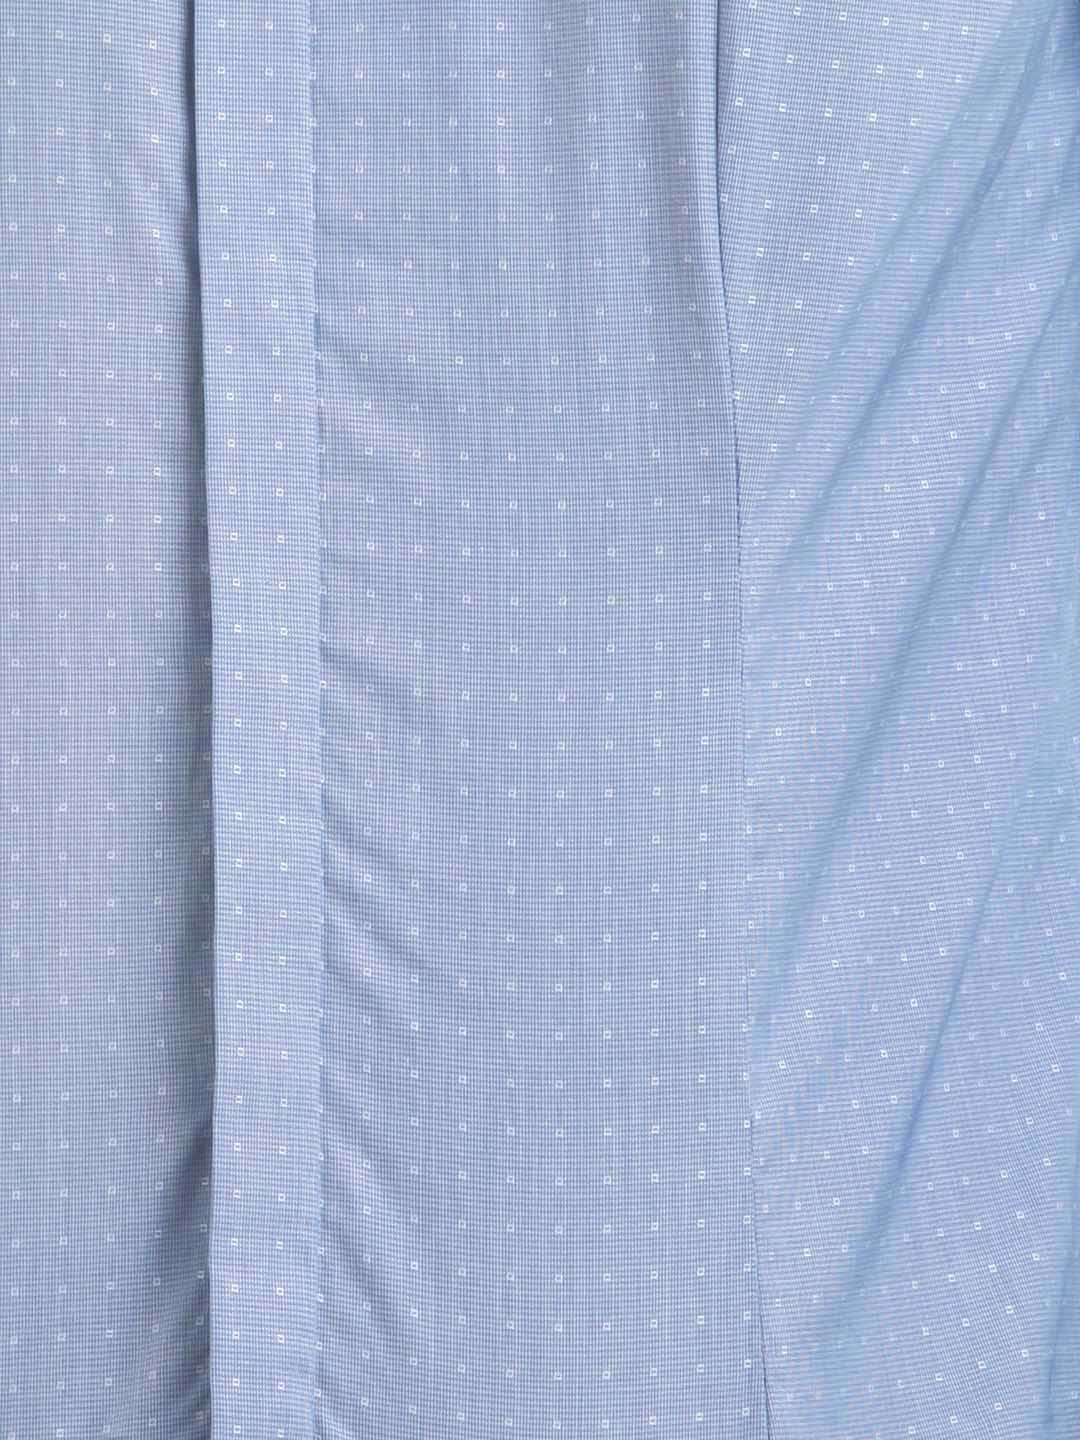 a blue shirt